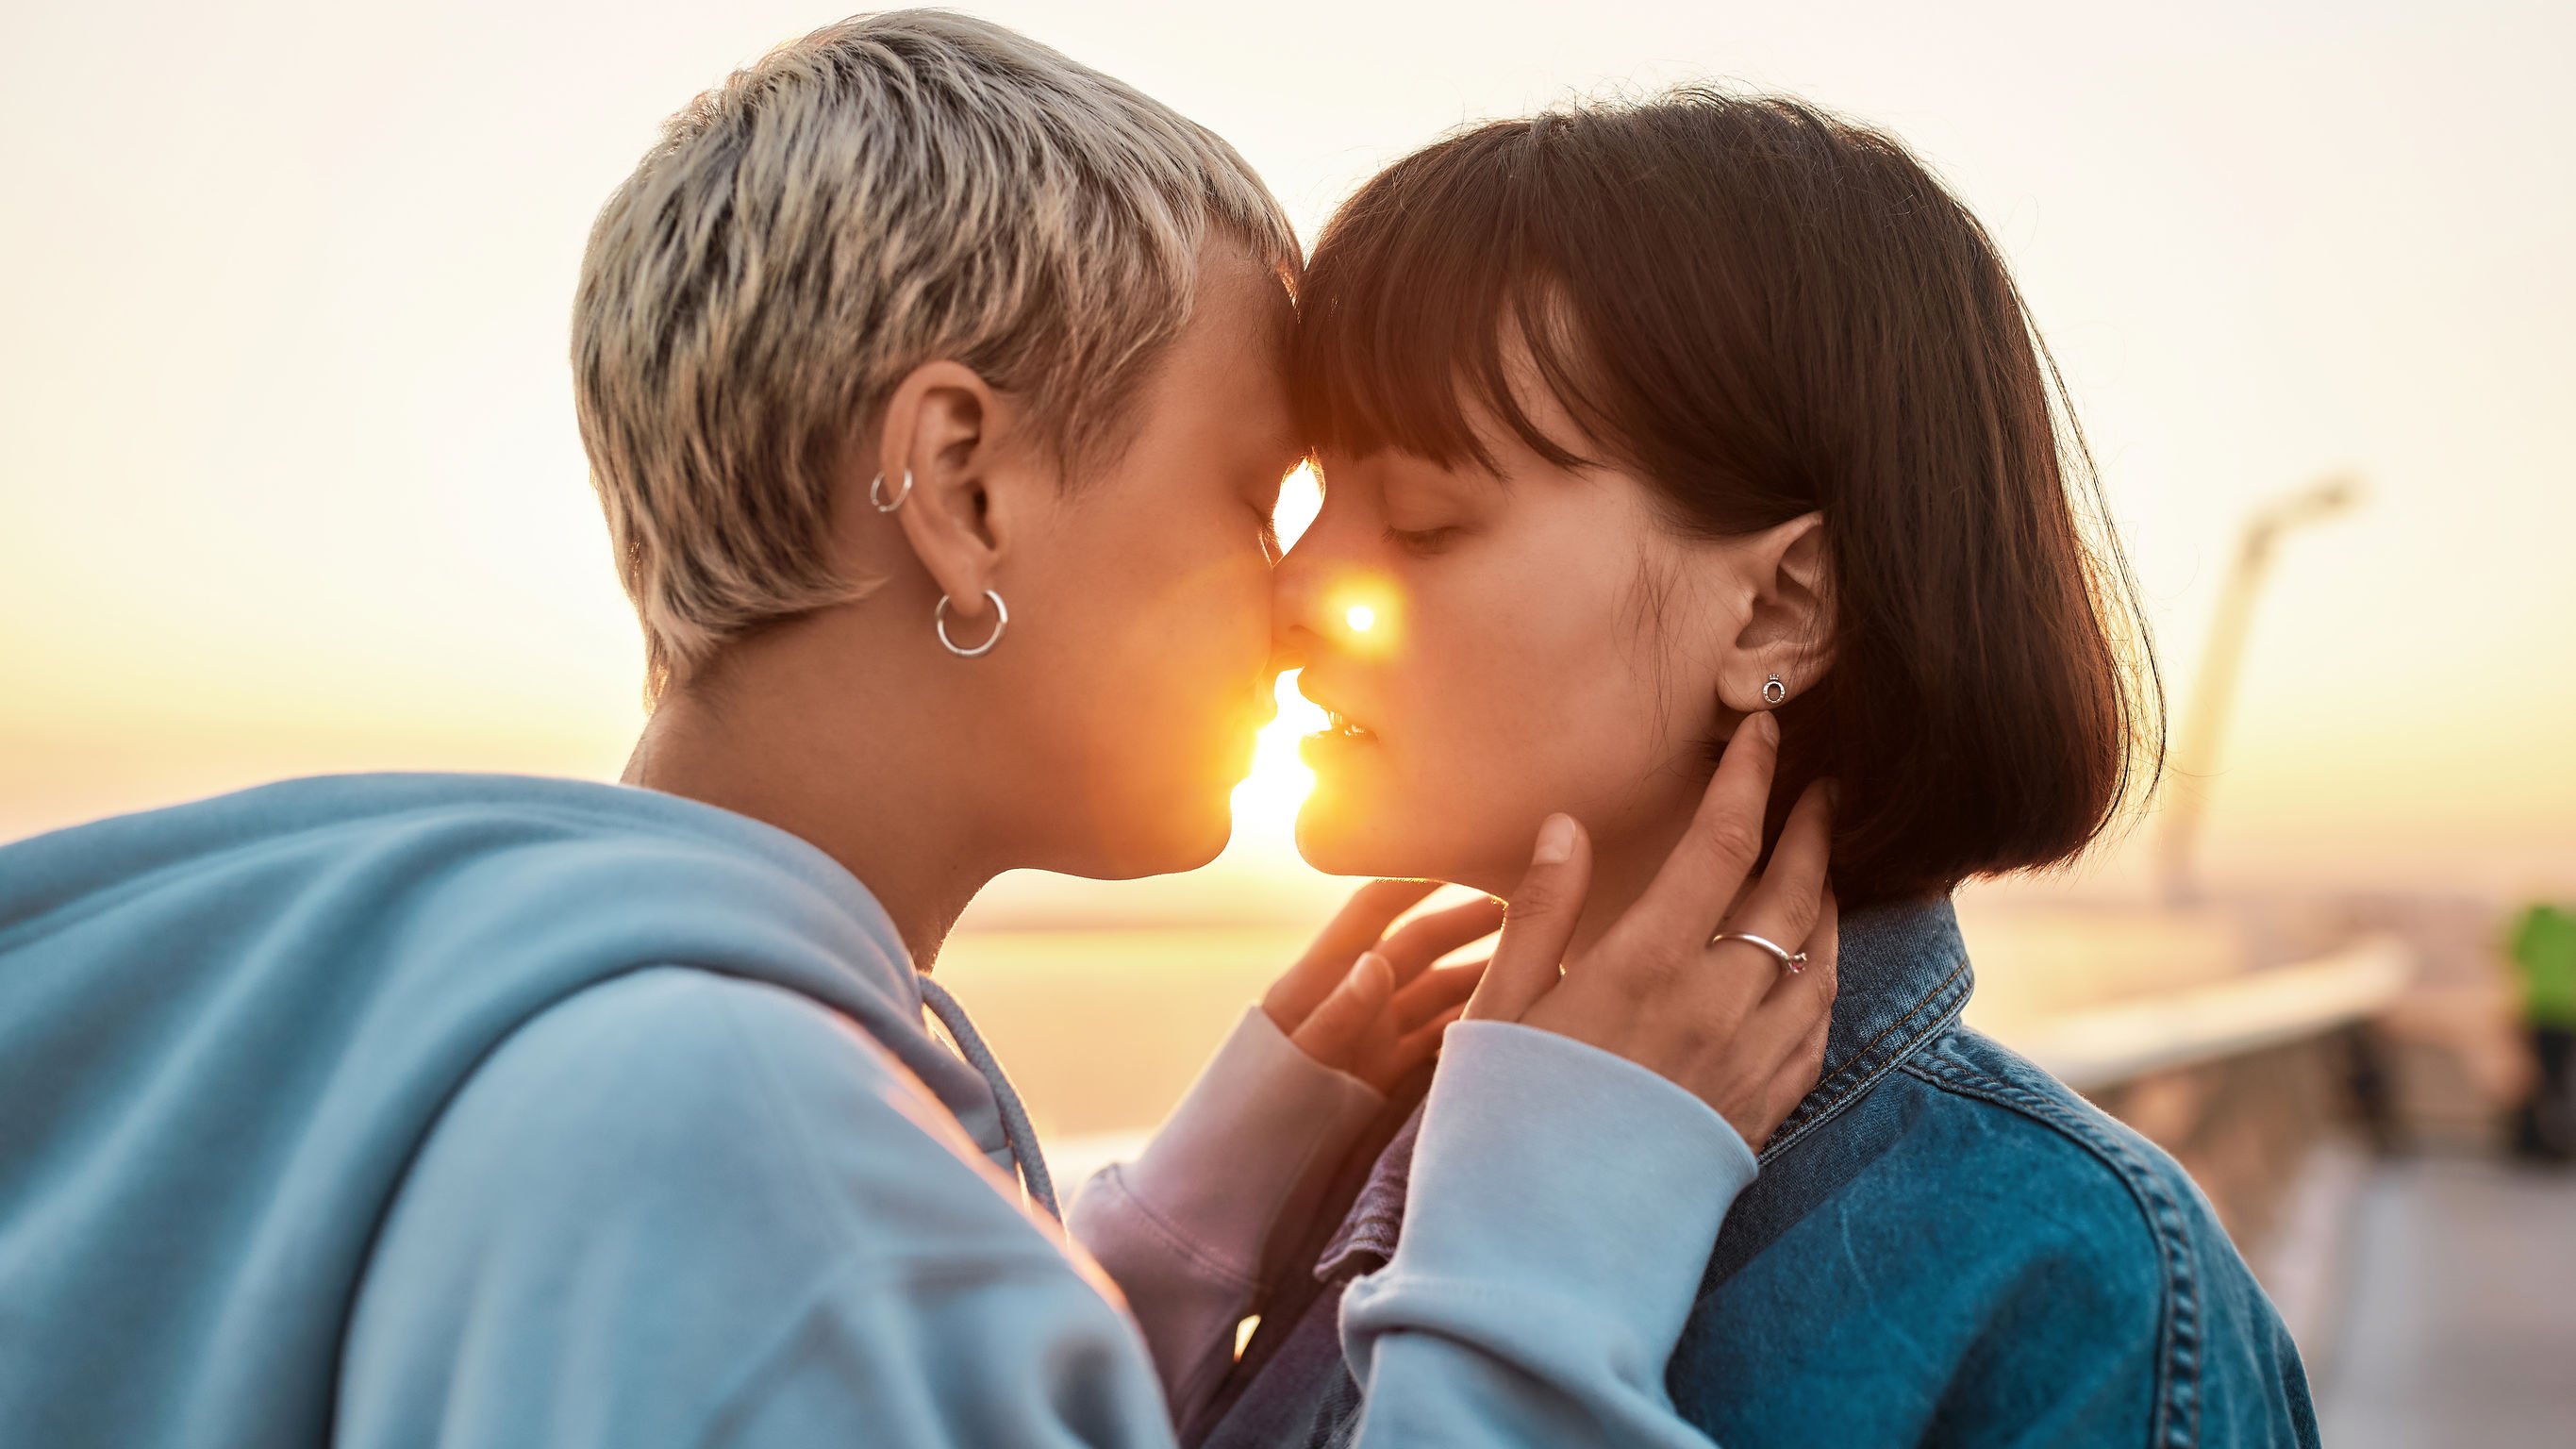 Duas mulheres brancas prestes a se beijar.